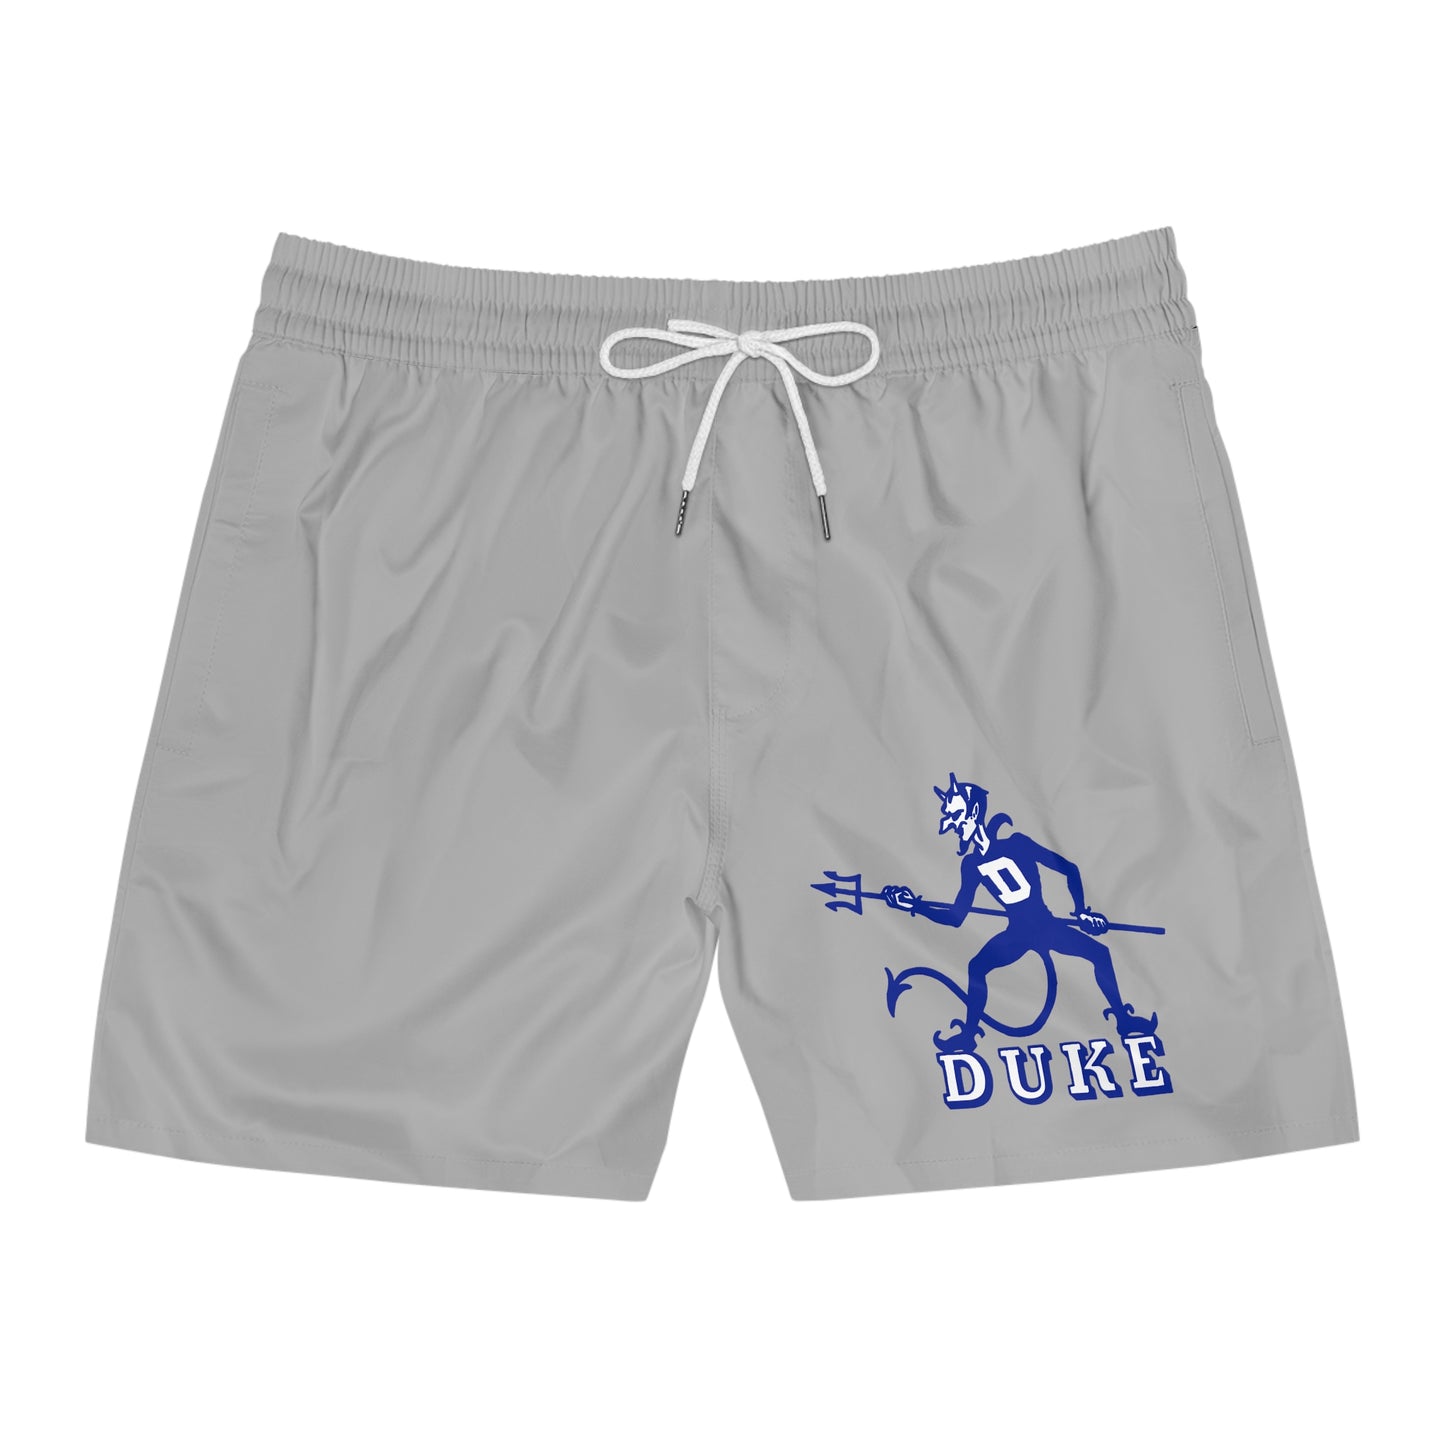 Duke Shorts